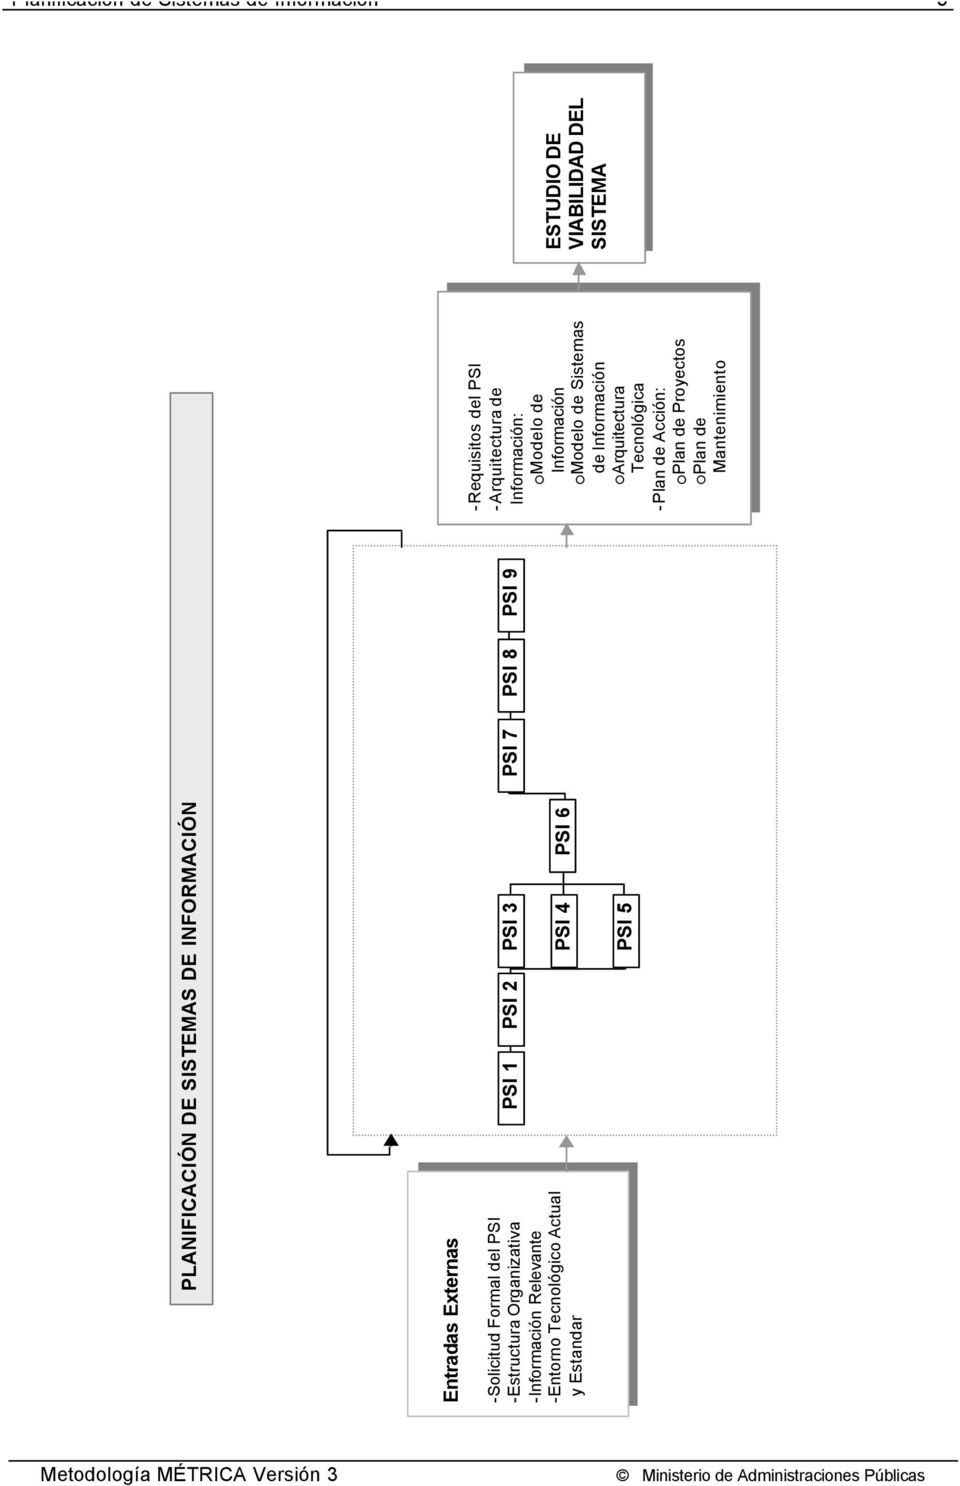 -Requisitos del -Arquitectura de Información: Información: Modelo de Información Modelo de Información Modelo de Sistemas Modelo de Sistemas de Información de Información Arquitectura Arquitectura